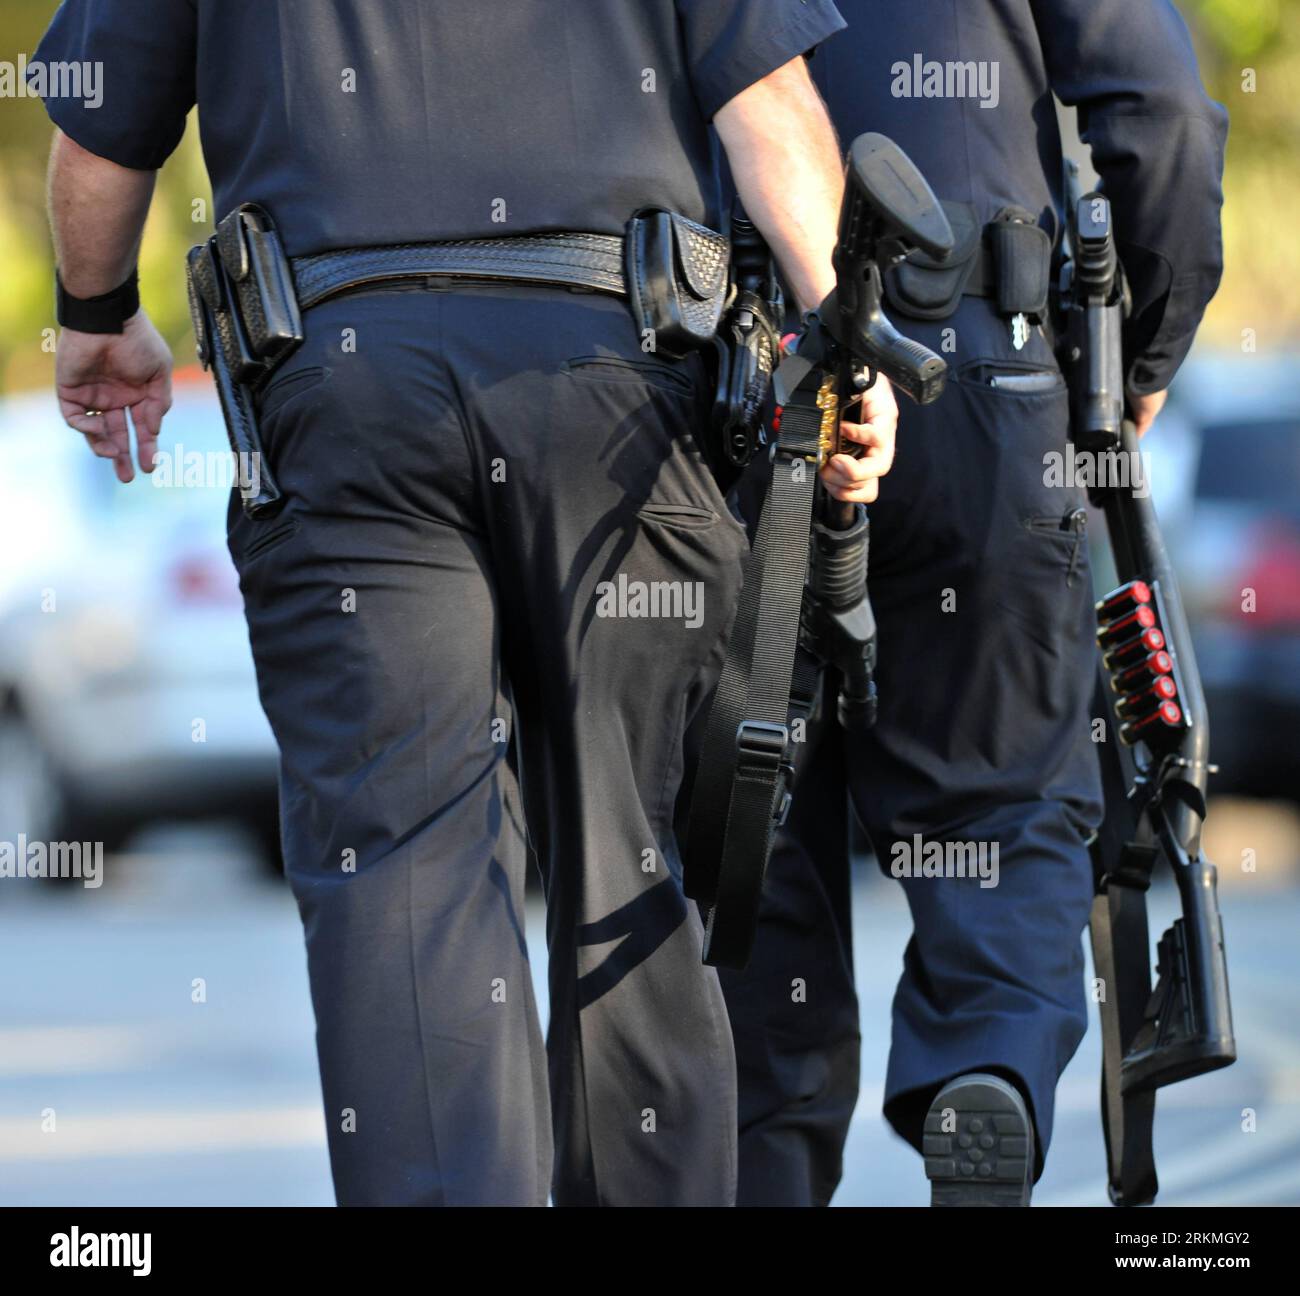 Bildnummer: 56744477 Datum: 17.12.2011 Copyright: imago/Xinhua (111217) -- LOS ANGELES, 17. Dezember 2011 (Xinhua) -- Polizisten patrouillieren auf einer Straße in Irwindale, Kalifornien, am 17. Dezember 2011. Ein bewaffneter Schütze mit einem Gewehr erschoss zwei Freitag in einem Bürogebäude von Southern California Edison in Los Angeles, bevor er sich selbst tötete, berichteten lokale Medien. (Xinhua/Yang Lei) (dtf) USA-KALIFORNIEN-SHOOTING PUBLICATIONxNOTxINxCHN Gesellschaft Polizei Polizist Amoklauf Amok USA x0x xtm 2011 Quadrat Premiere 56744477 Datum 17 12 2011 Copyright Imago XINHUA Los Angeles DEZ 17 2011 XINHUA Polizist Pat Stockfoto